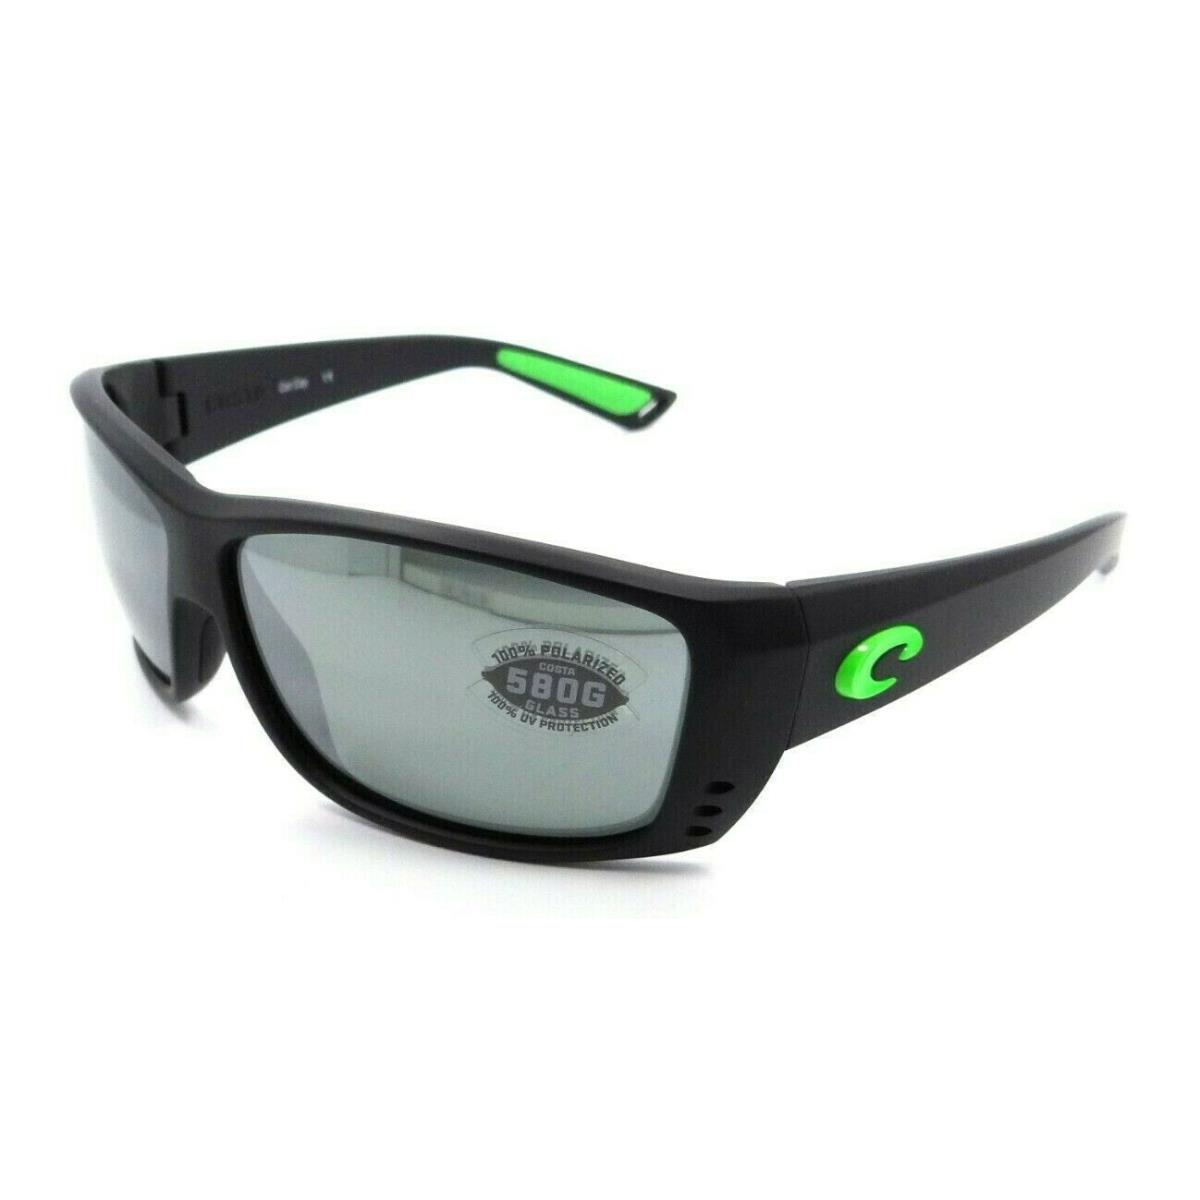 Costa Del Mar Sunglasses Cat Cay Matte Black Green Logo/ Gray Silver Mirror 580G - Multicolor Frame